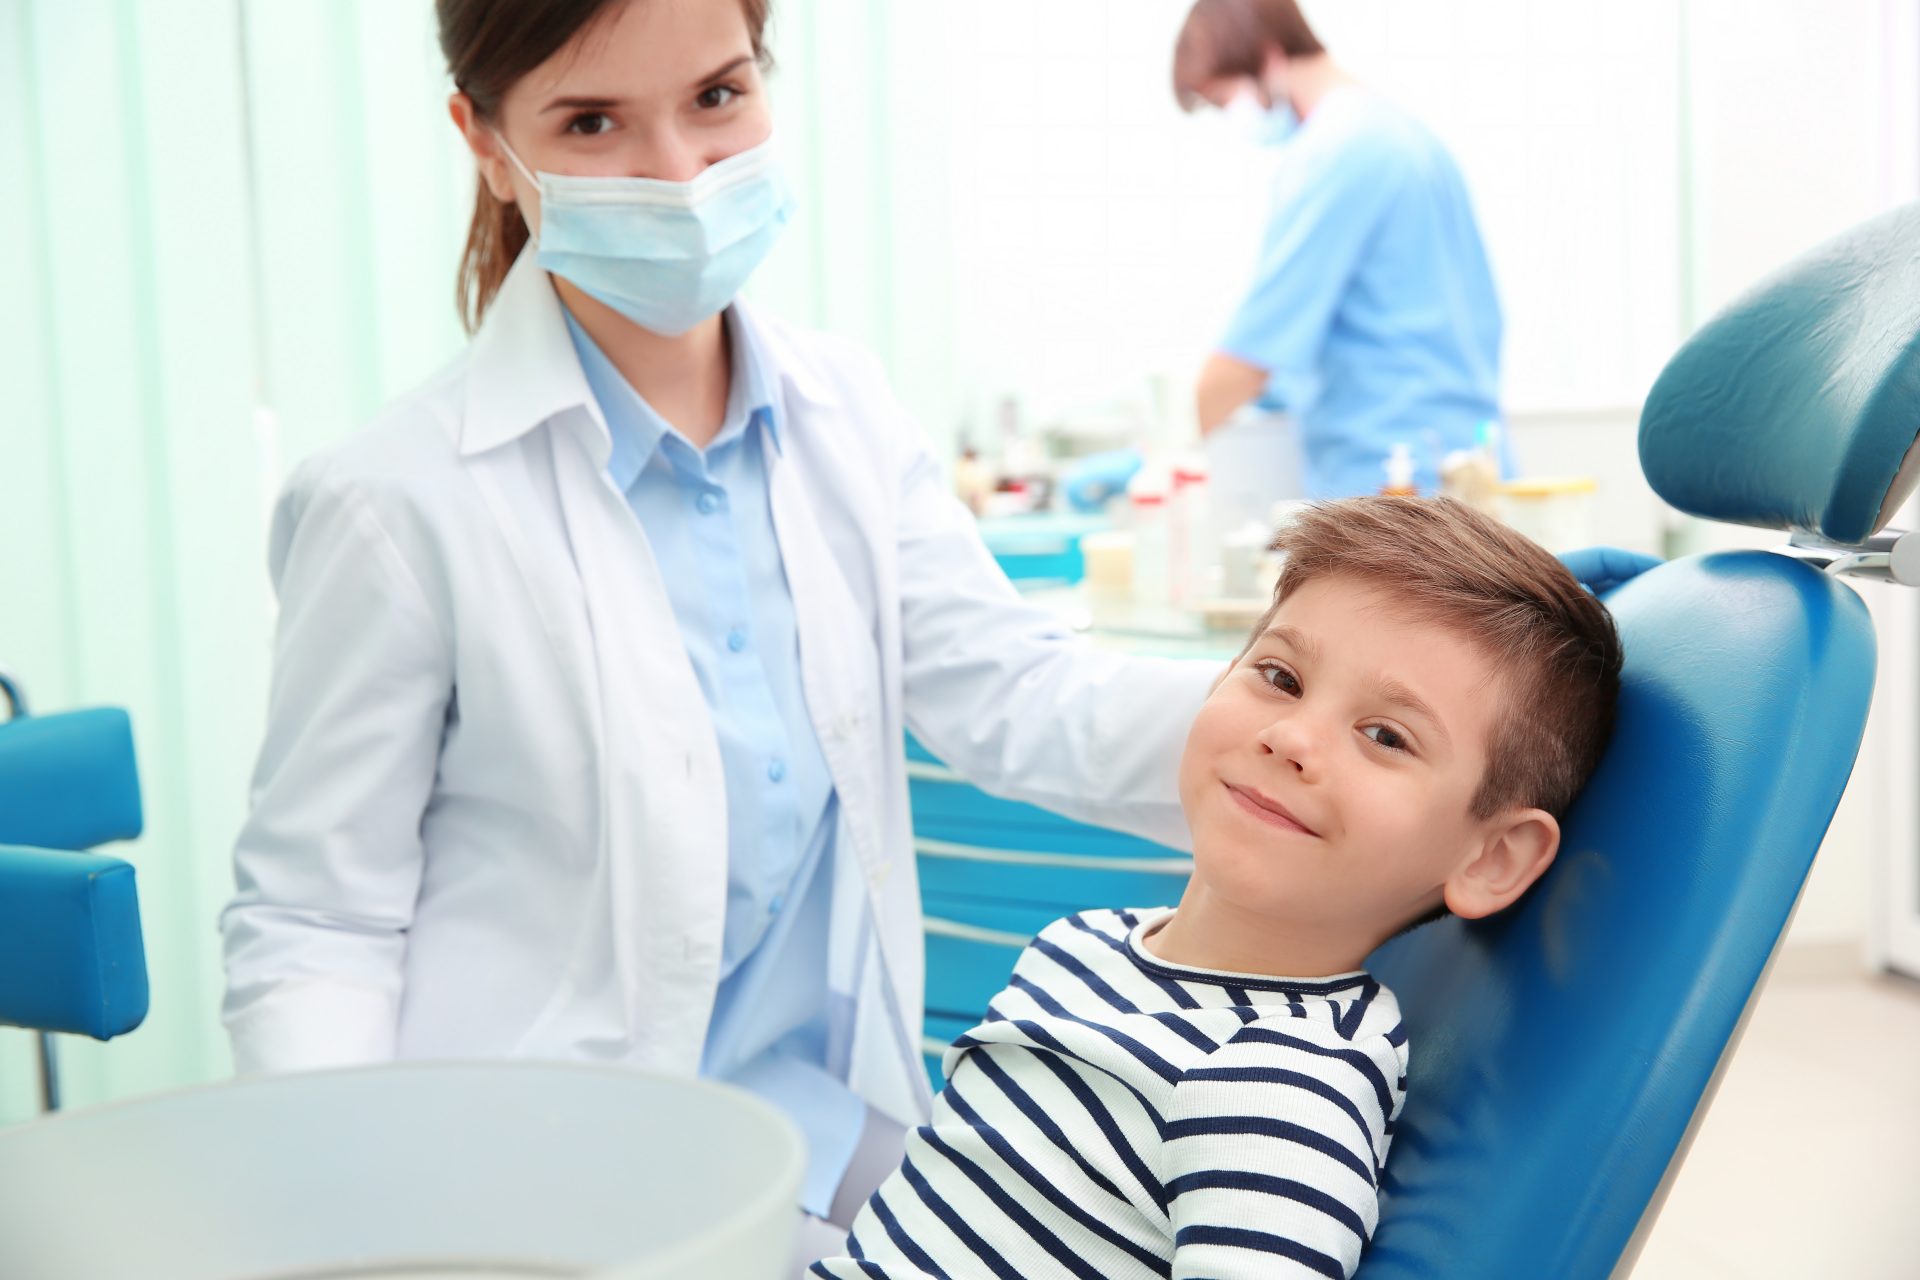 Детская стоматология отзывы о врачах. Ребенок на приеме у стоматолога. Ортодонт детский. Детская стоматология ортодонт. Детский зубной врач.